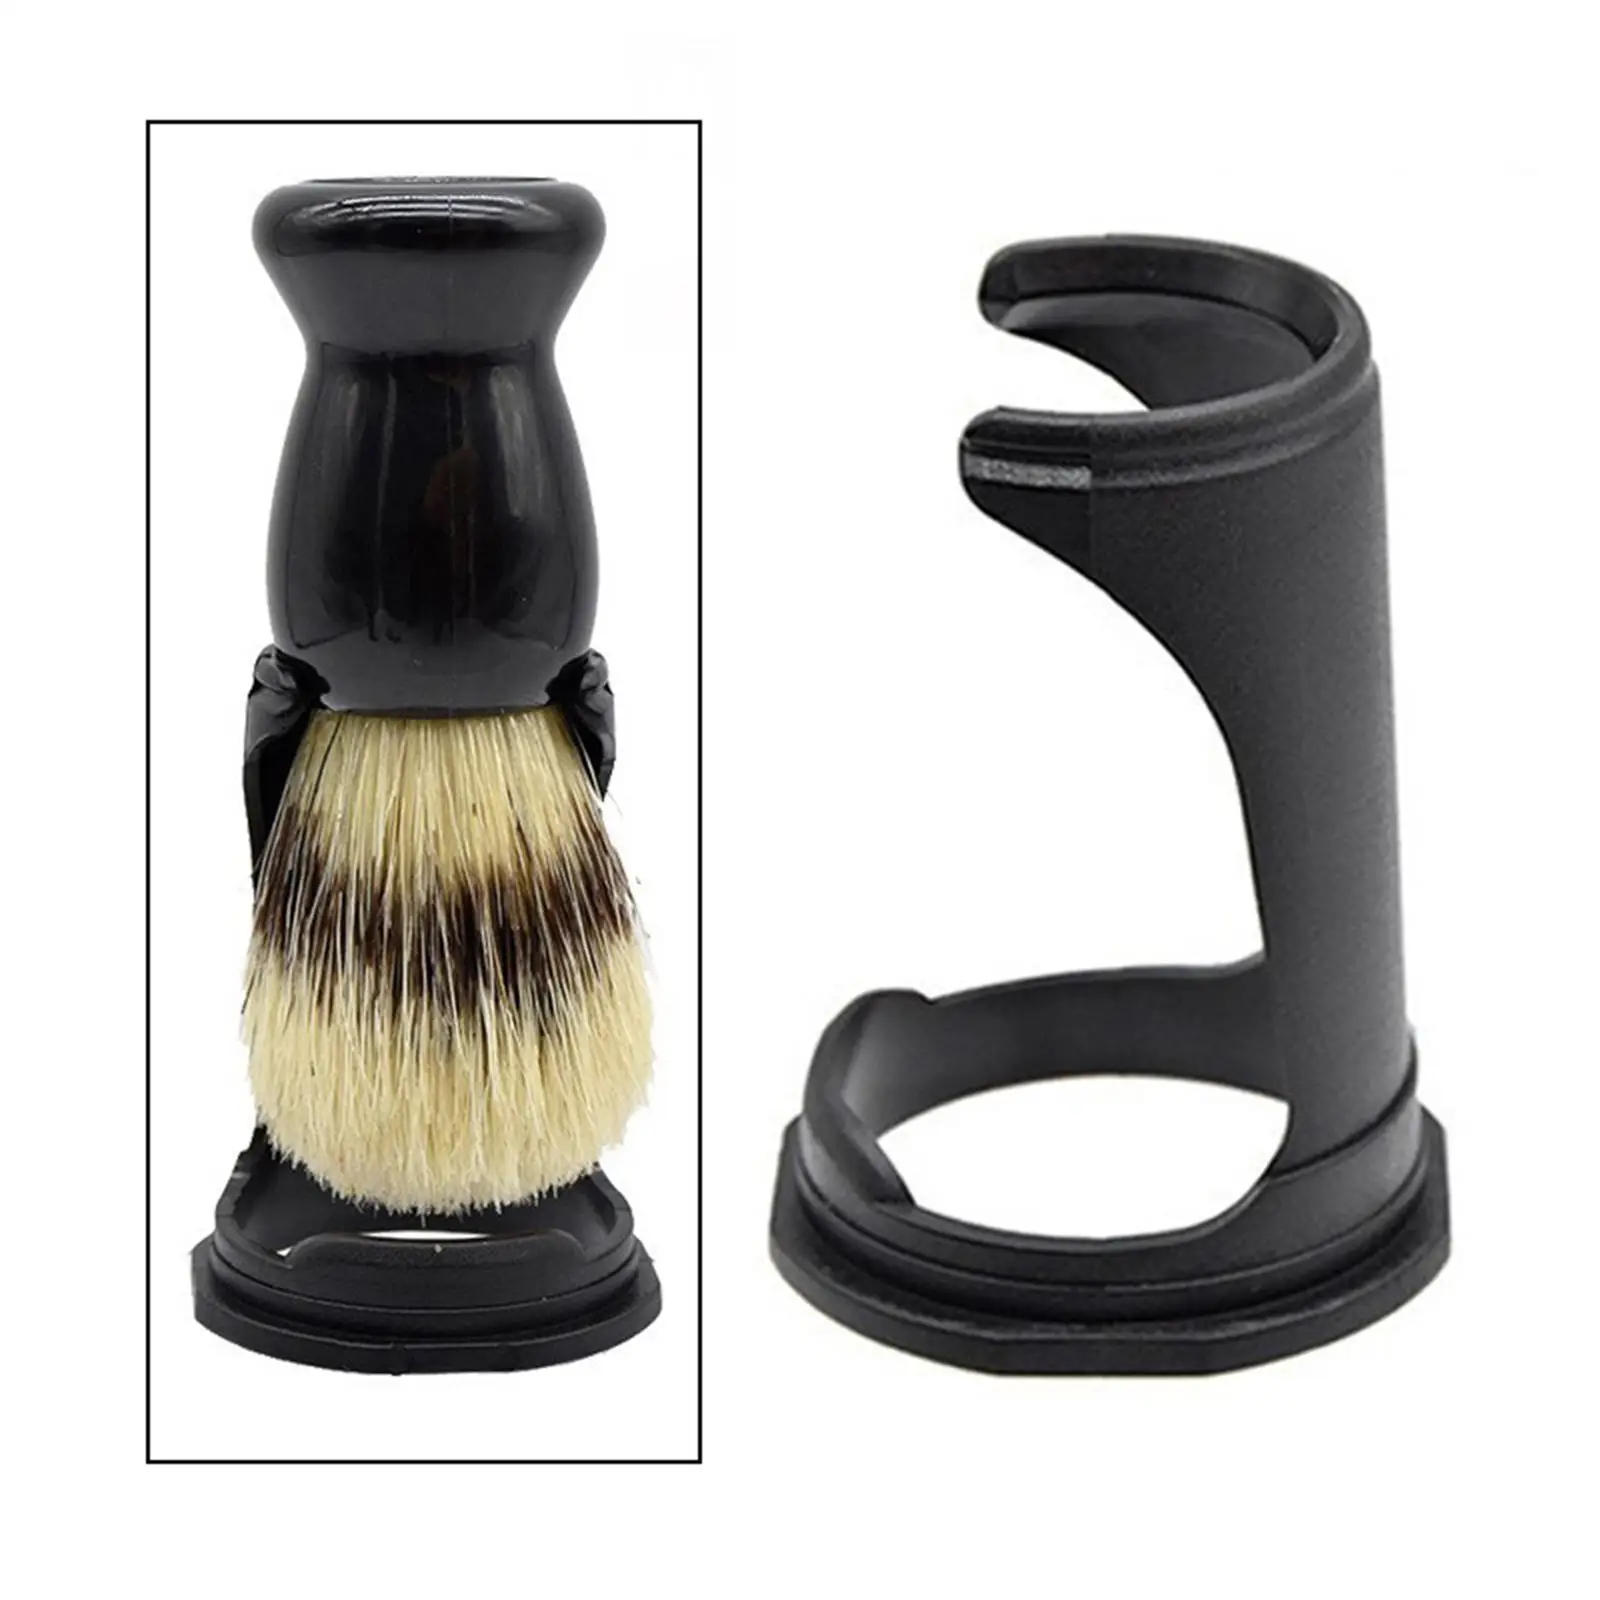 Men`brush Shaving Holder Shaving and Brush Stand for Shower Room